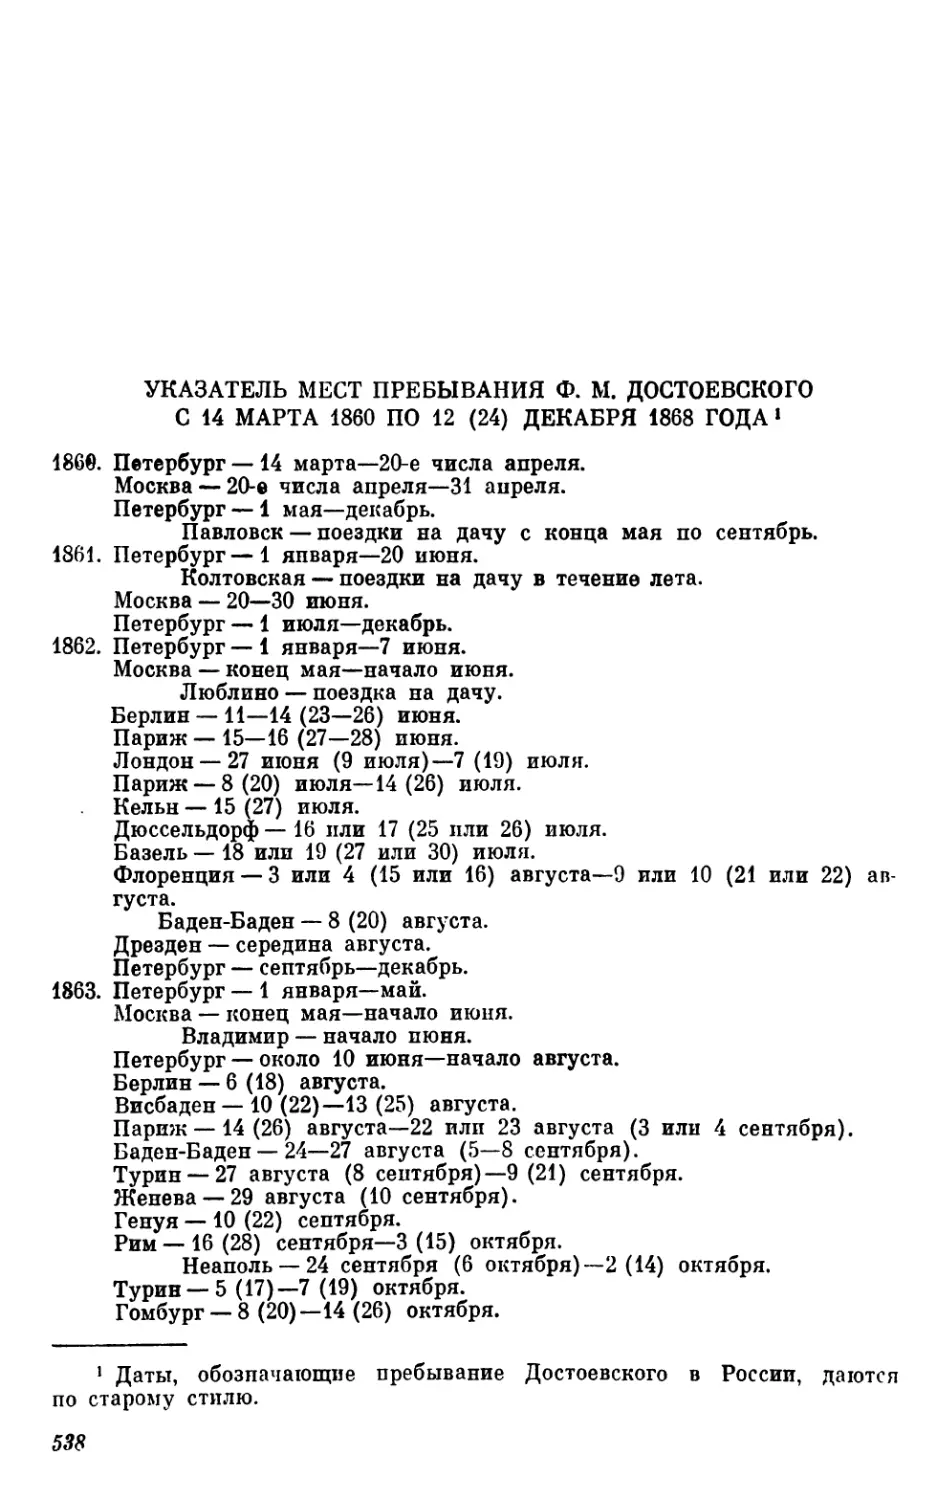 Указатель мест пребывания Ф. М. Достоевского с 1860 по 1868 год